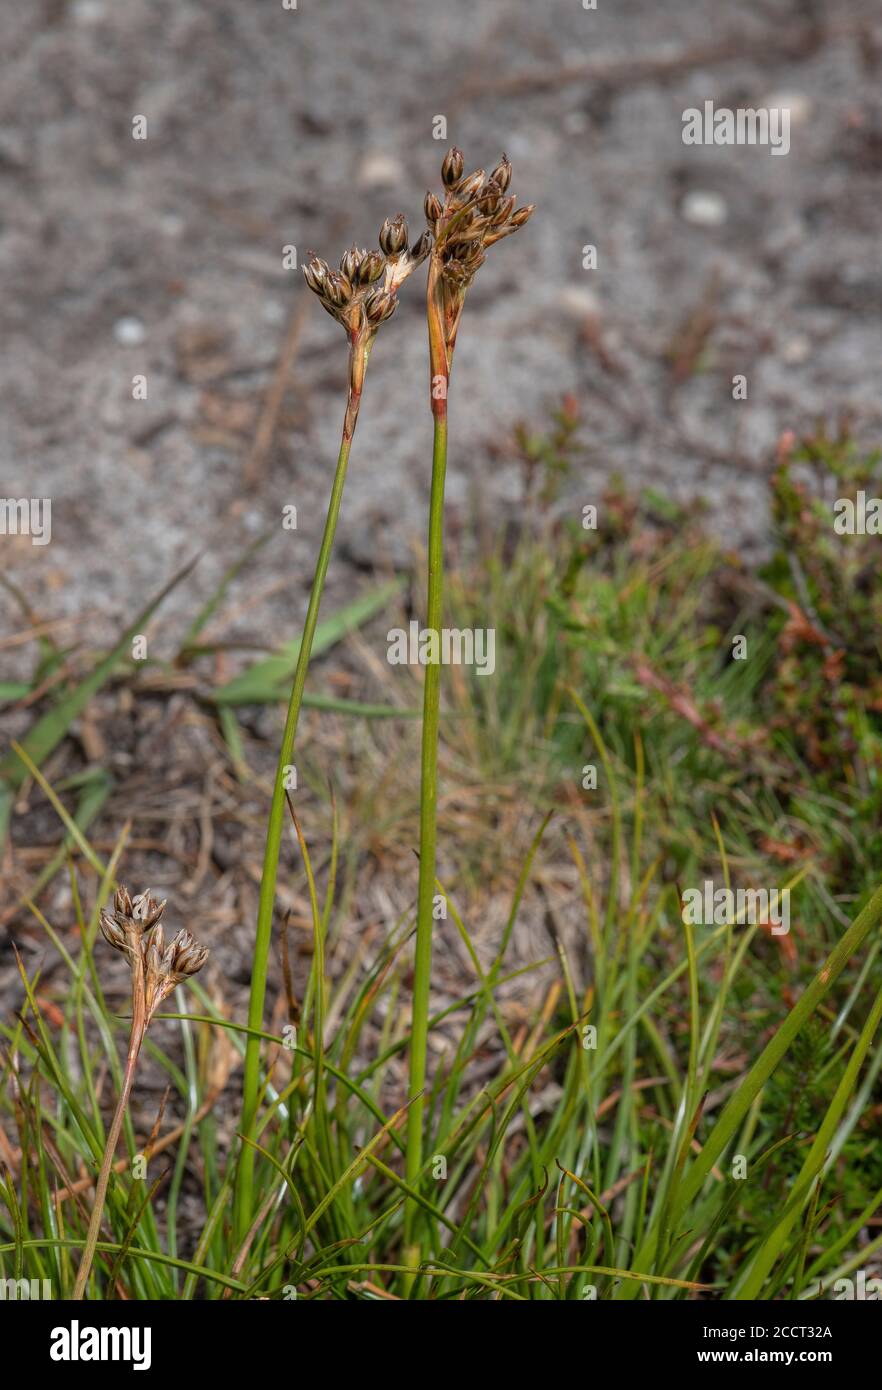 Heath Rush, Juncus squarrosus in flower on heathland, Dorset. Stock Photo